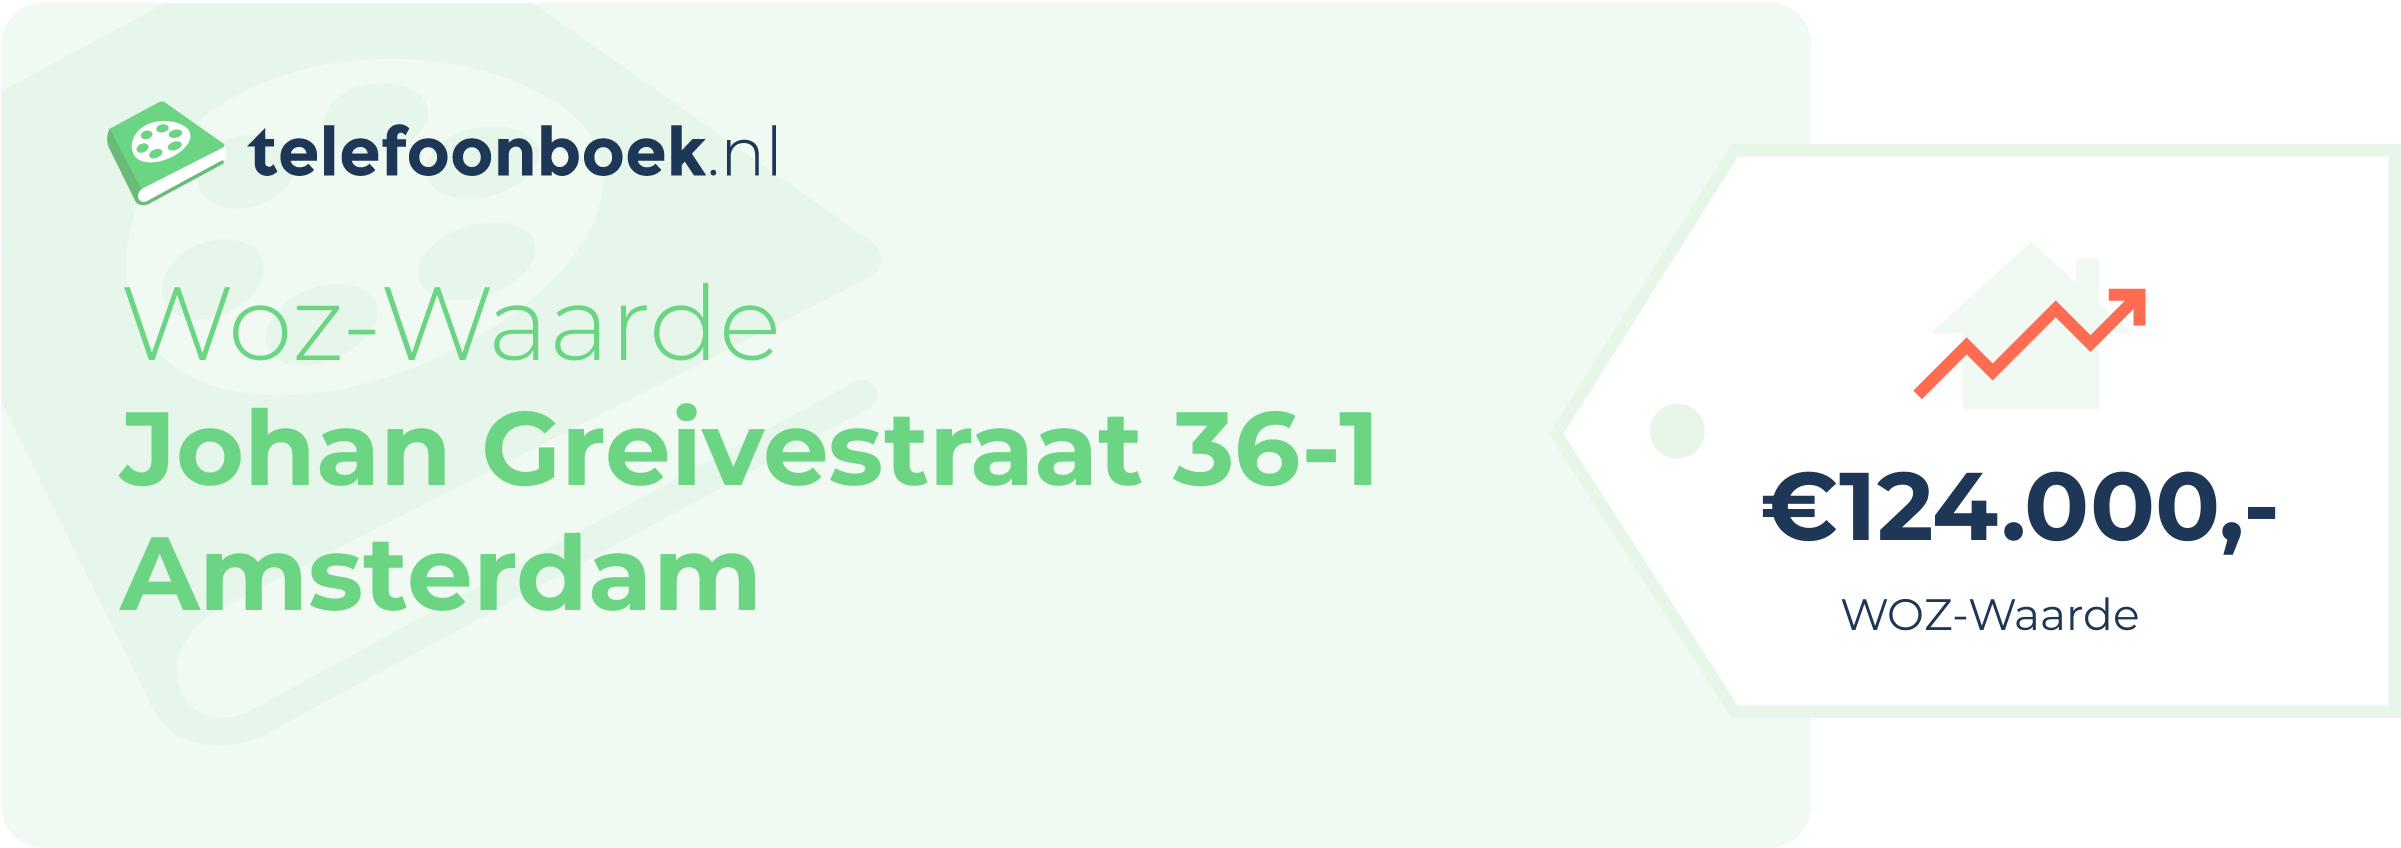 WOZ-waarde Johan Greivestraat 36-1 Amsterdam